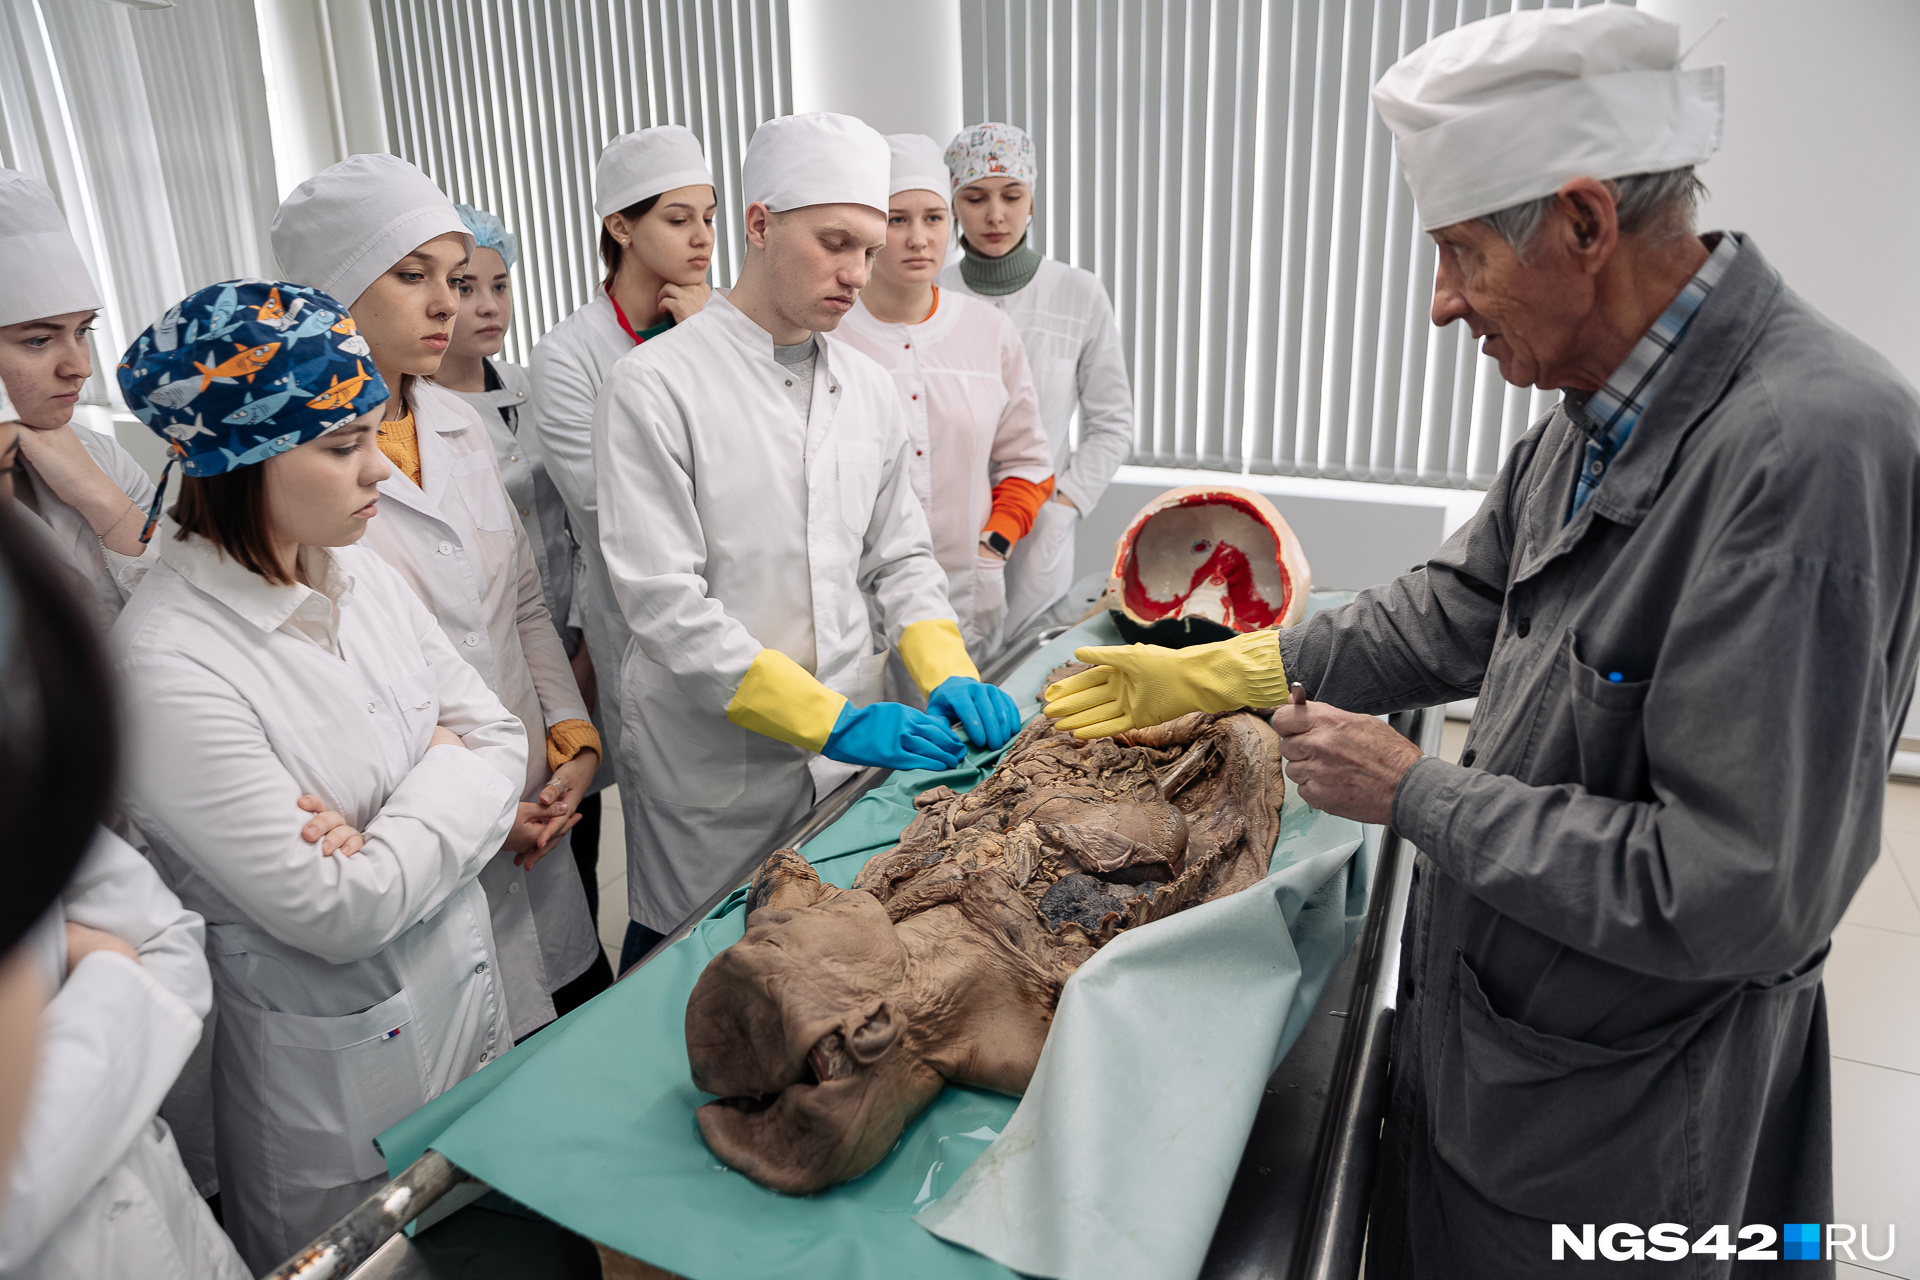 Во время визита в музей мы застали занятие студентов-медиков по анатомии